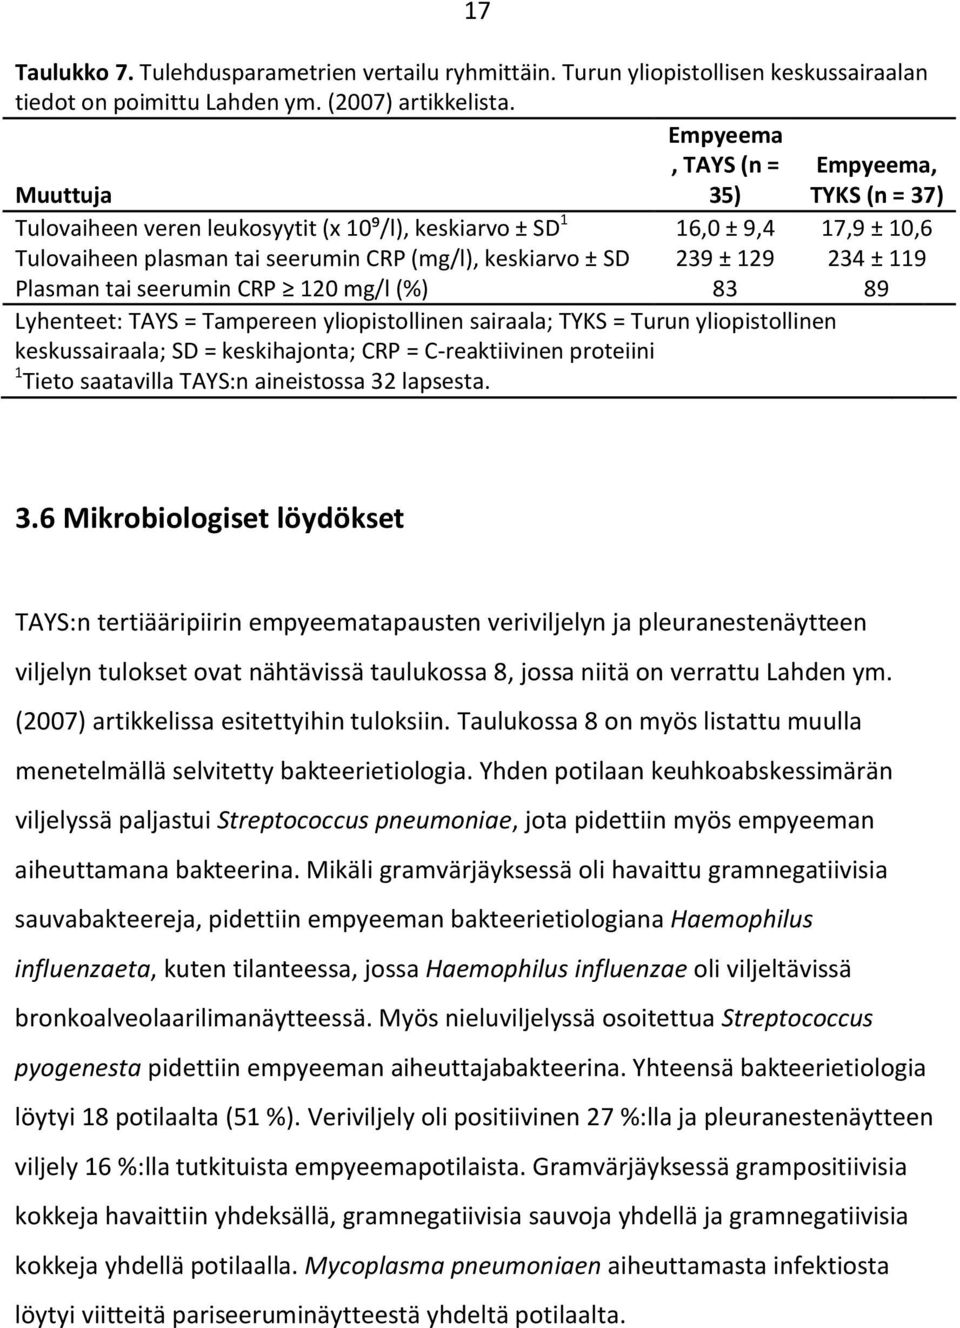 239 ± 129 234 ± 119 Plasman tai seerumin CRP 120 mg/l (%) 83 89 Lyhenteet: TAYS = Tampereen yliopistollinen sairaala; TYKS = Turun yliopistollinen keskussairaala; SD = keskihajonta; CRP =